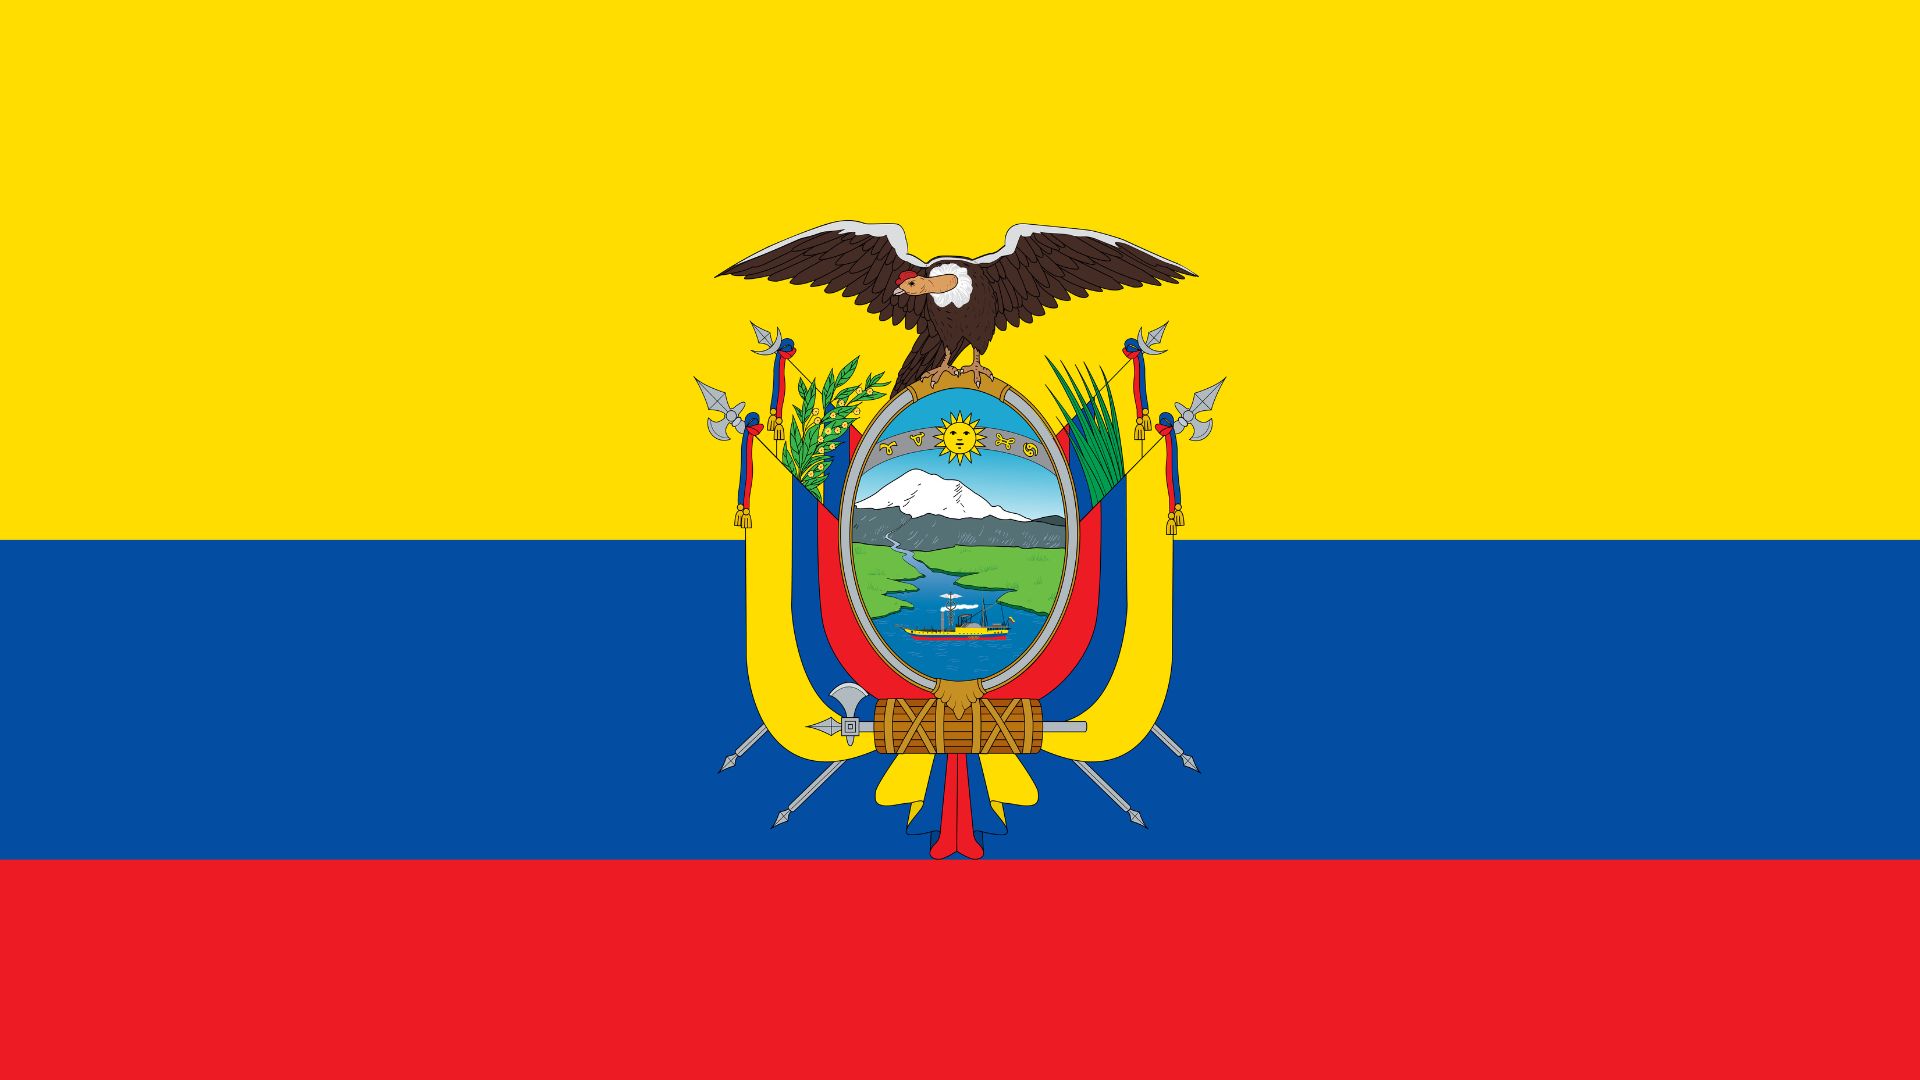 A bandeira do Equador consiste em três faixas horizontais nas cores amarelo azul e vermelho, com o brasão nacional ao centro.